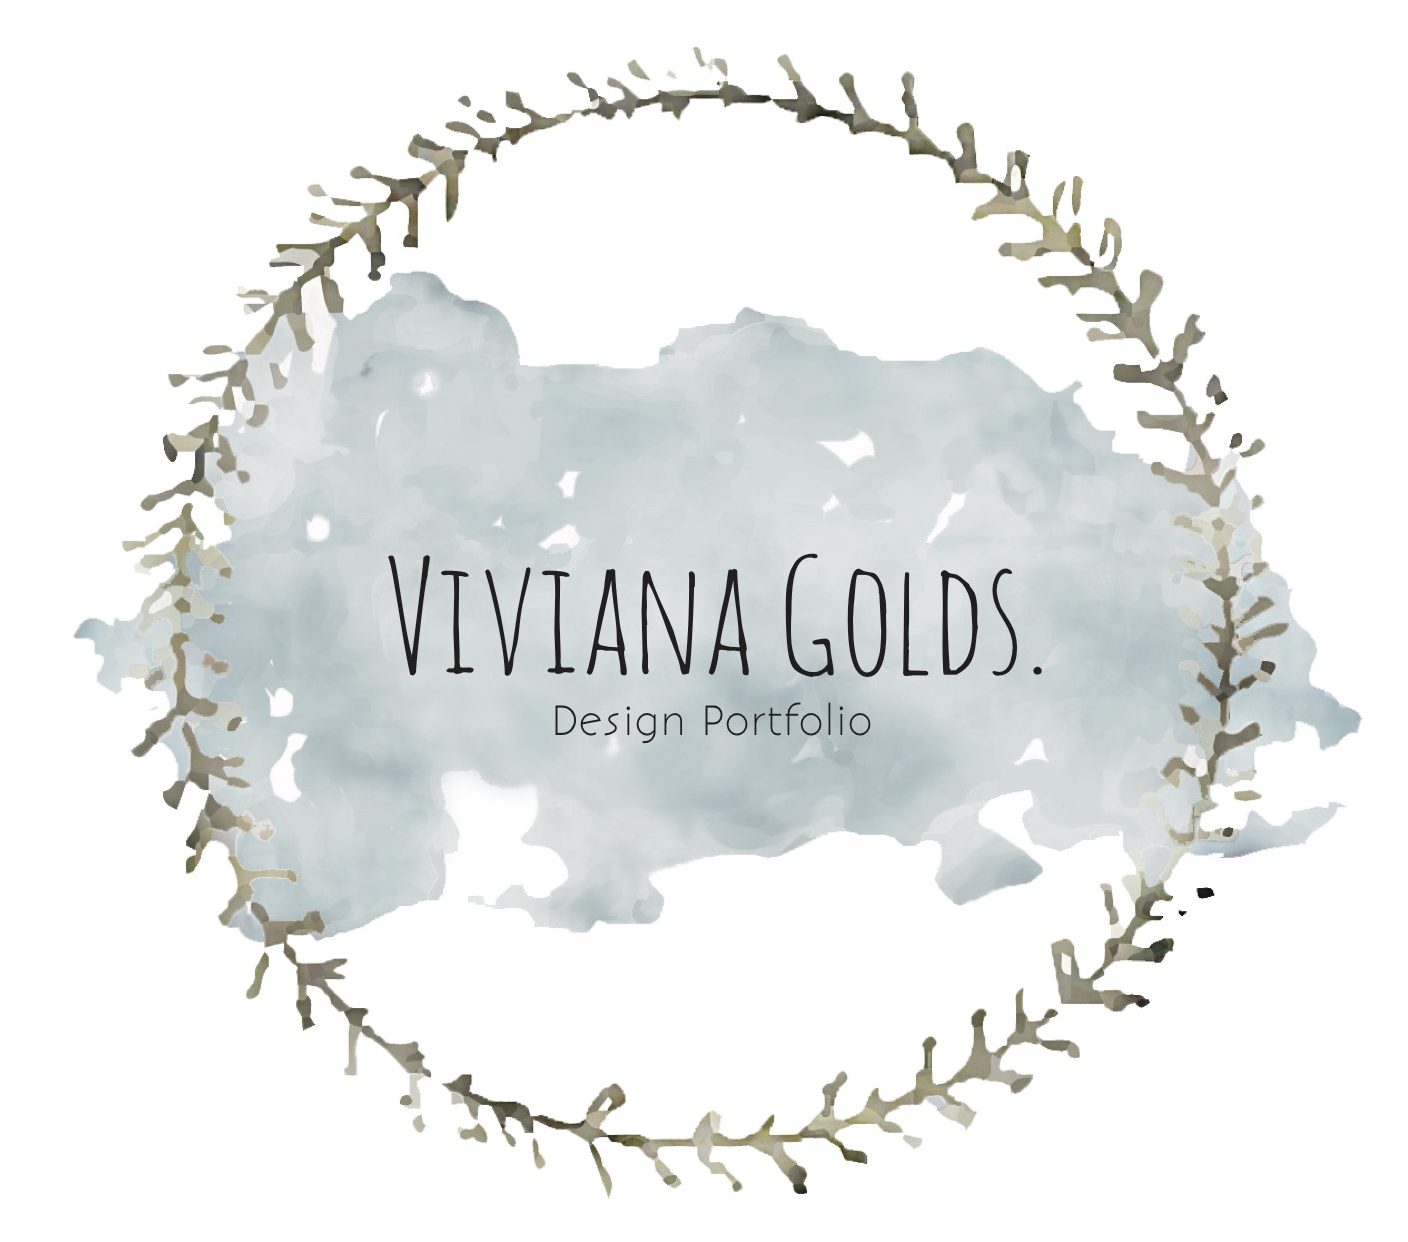 Viviana's Blog